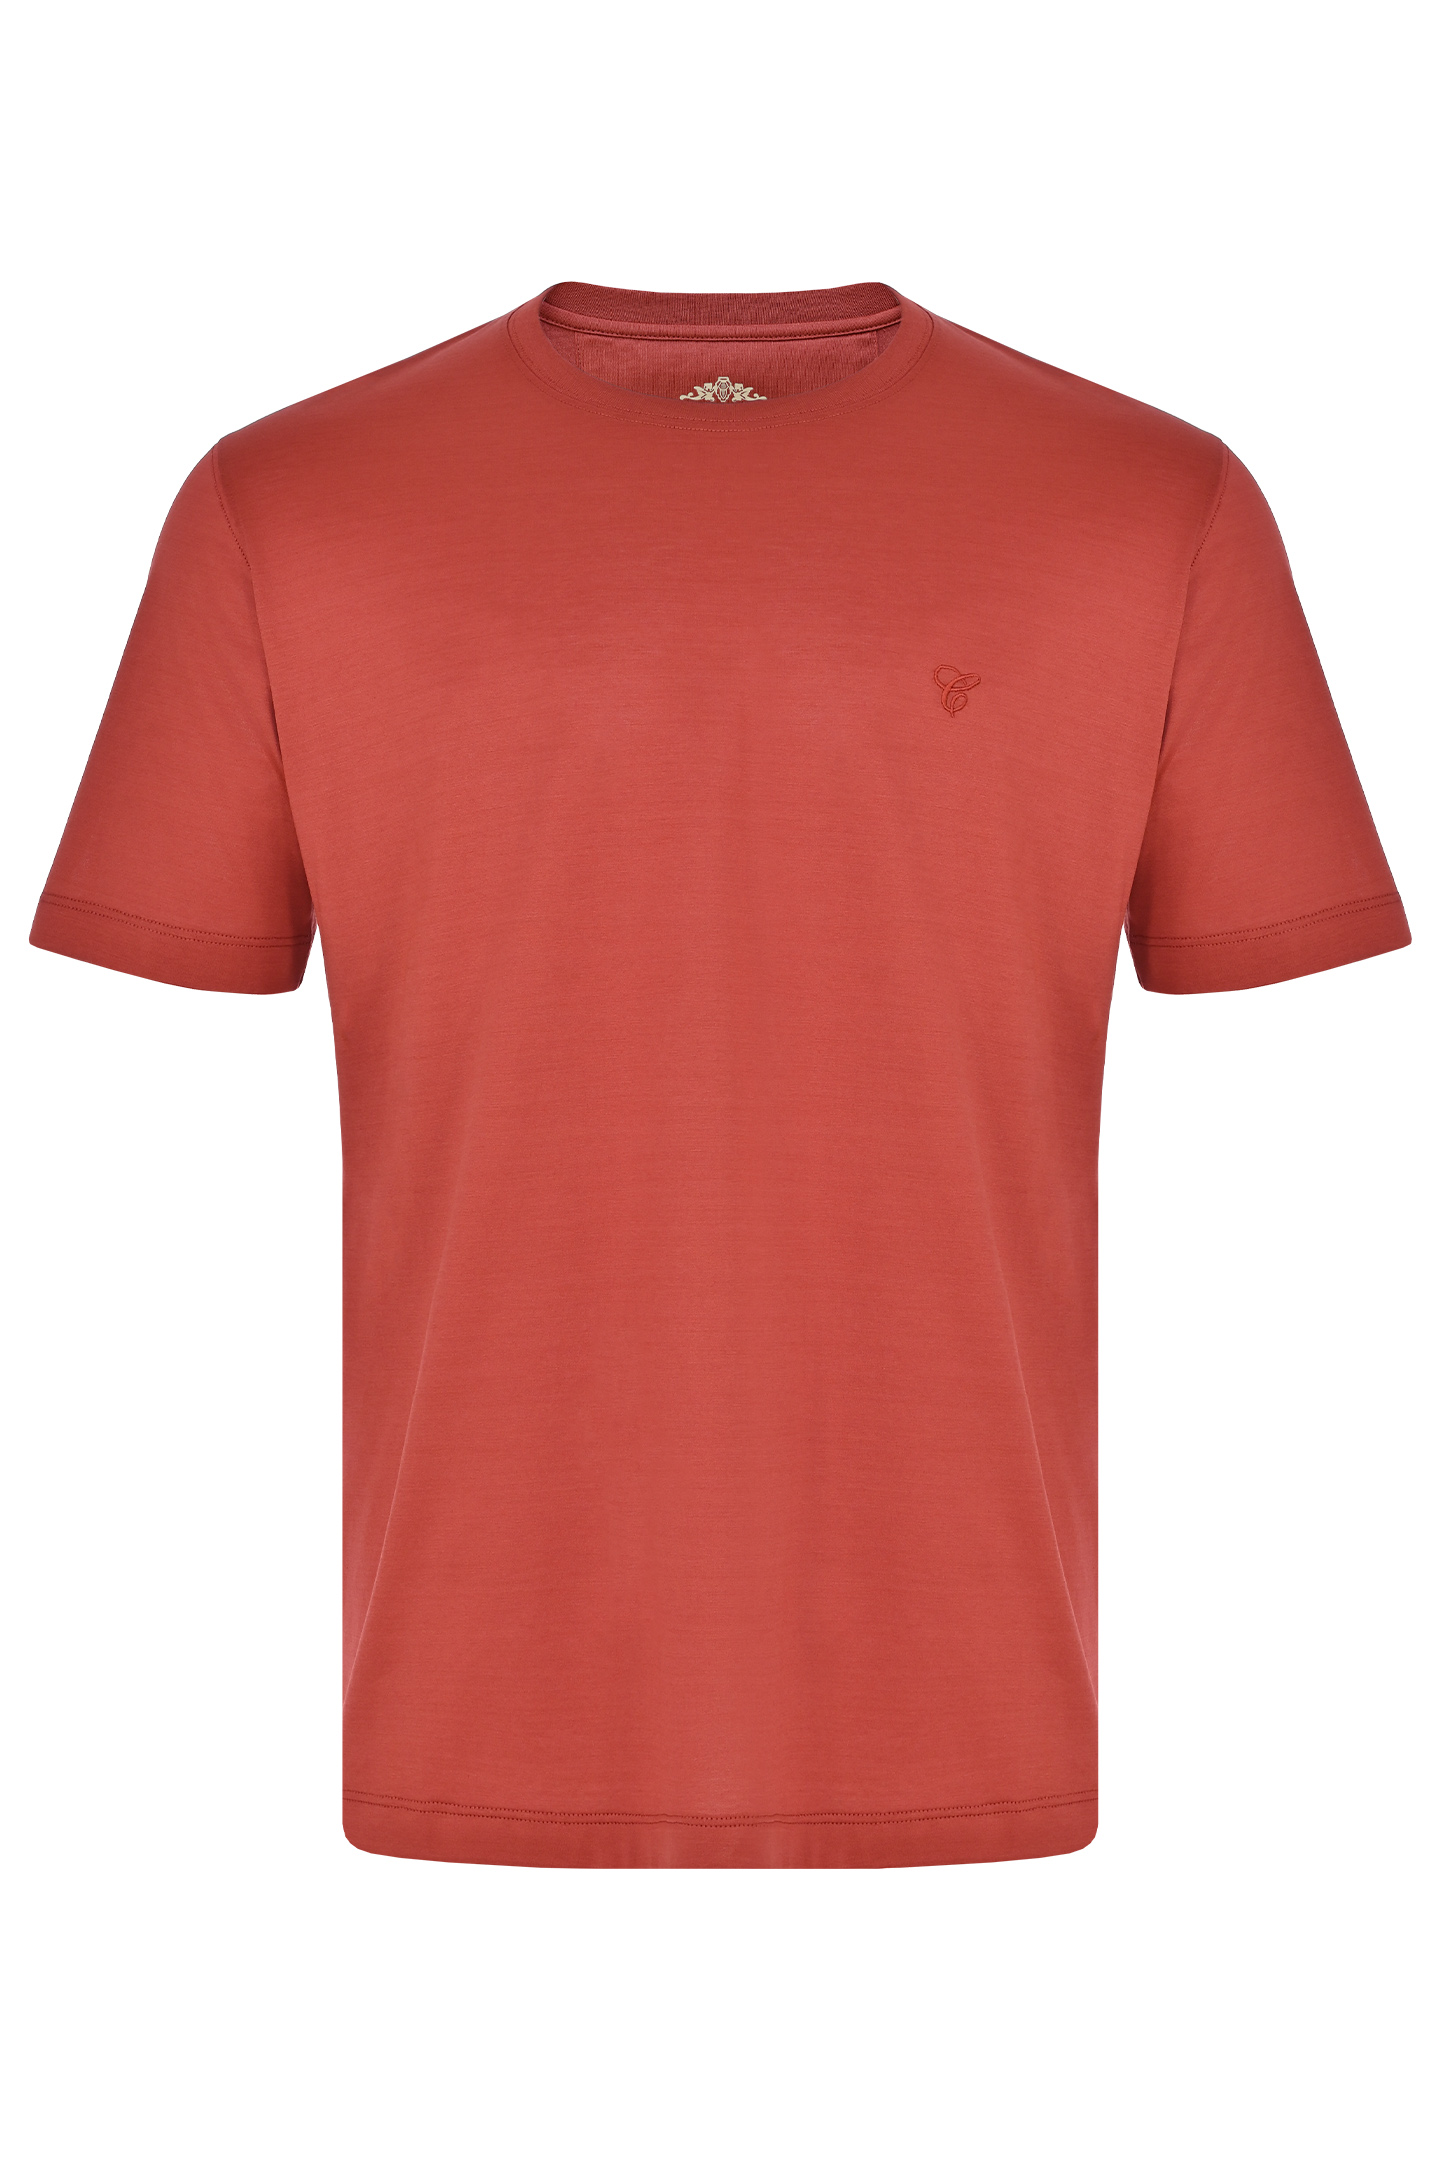 Базовая хлопковая футболка CASTANGIA DM60, цвет: Бордовый, Мужской